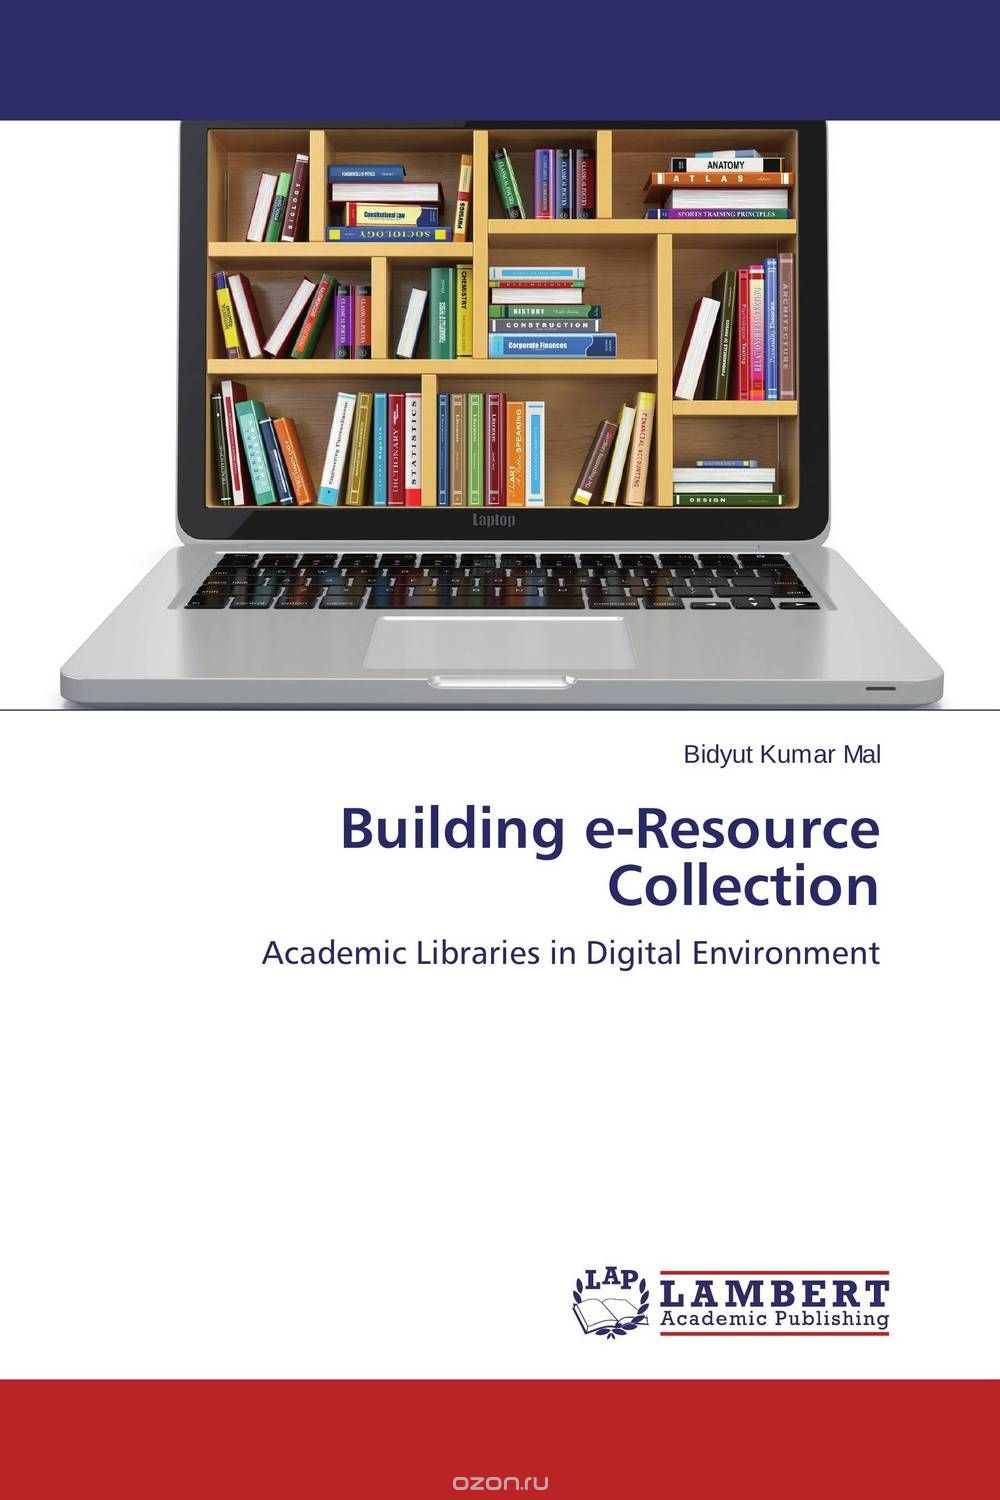 Скачать книгу "Building e-Resource Collection"